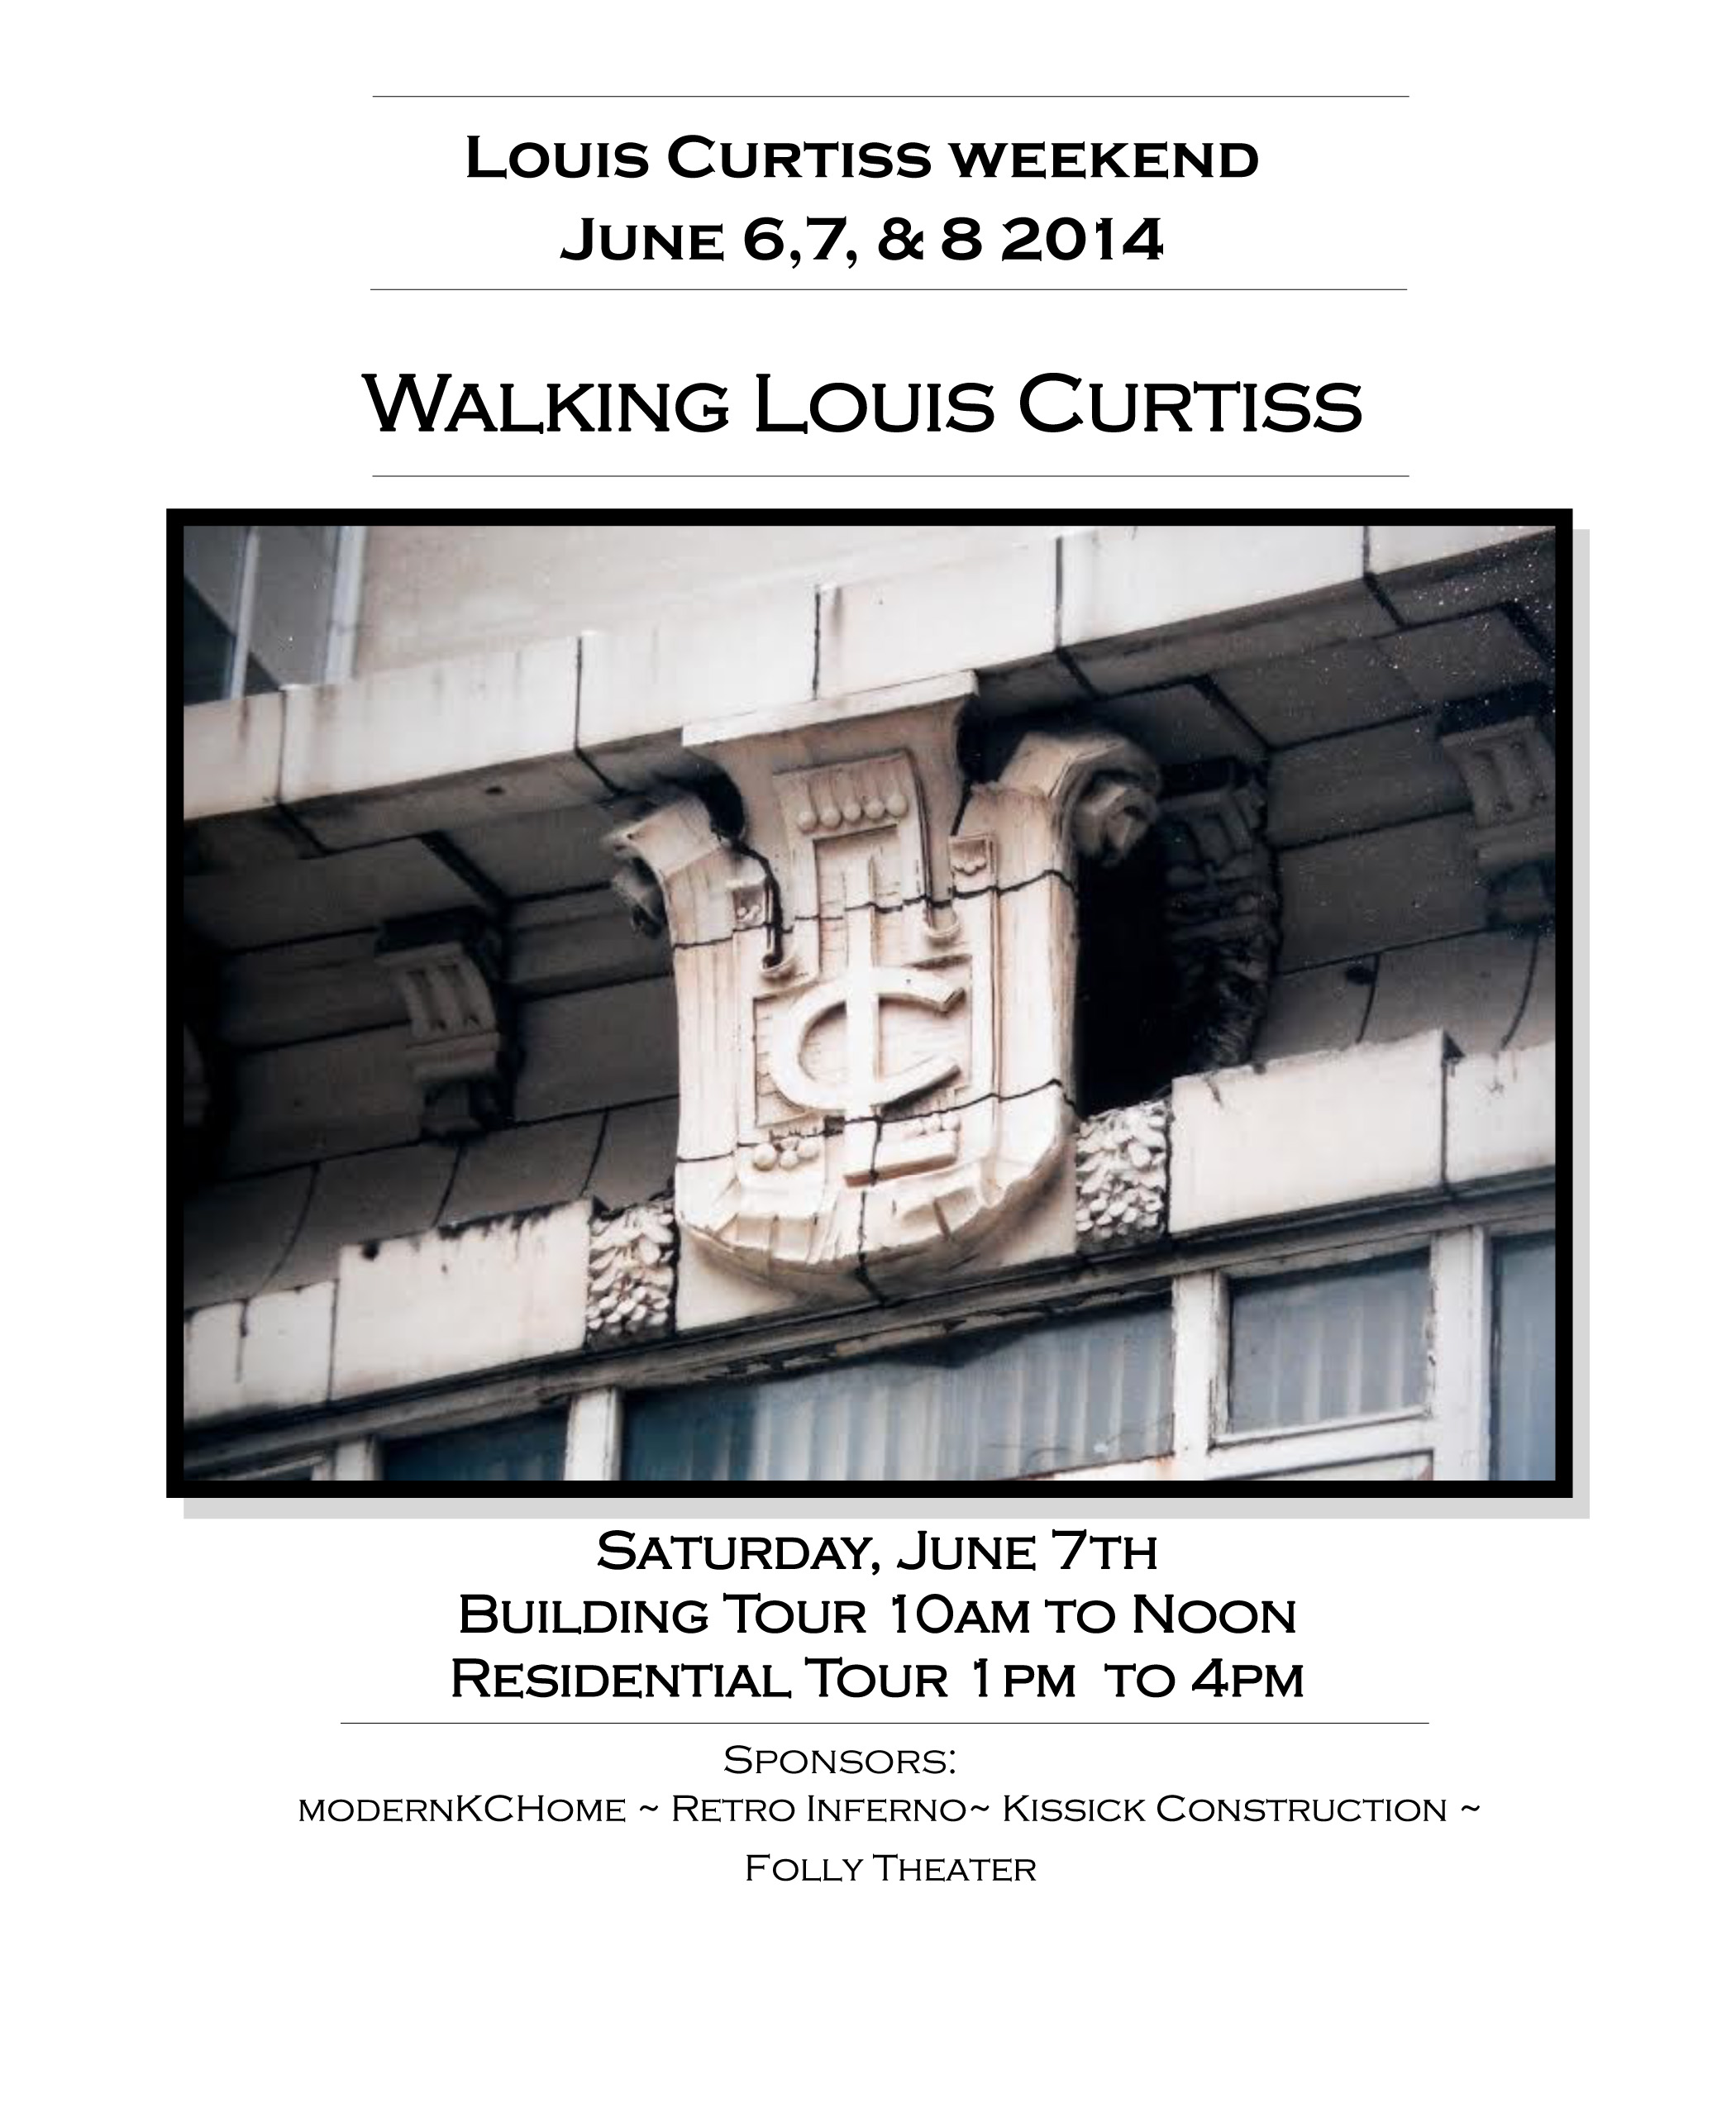 Louis Curtiss Weekend June 6,7 & 8, 2014